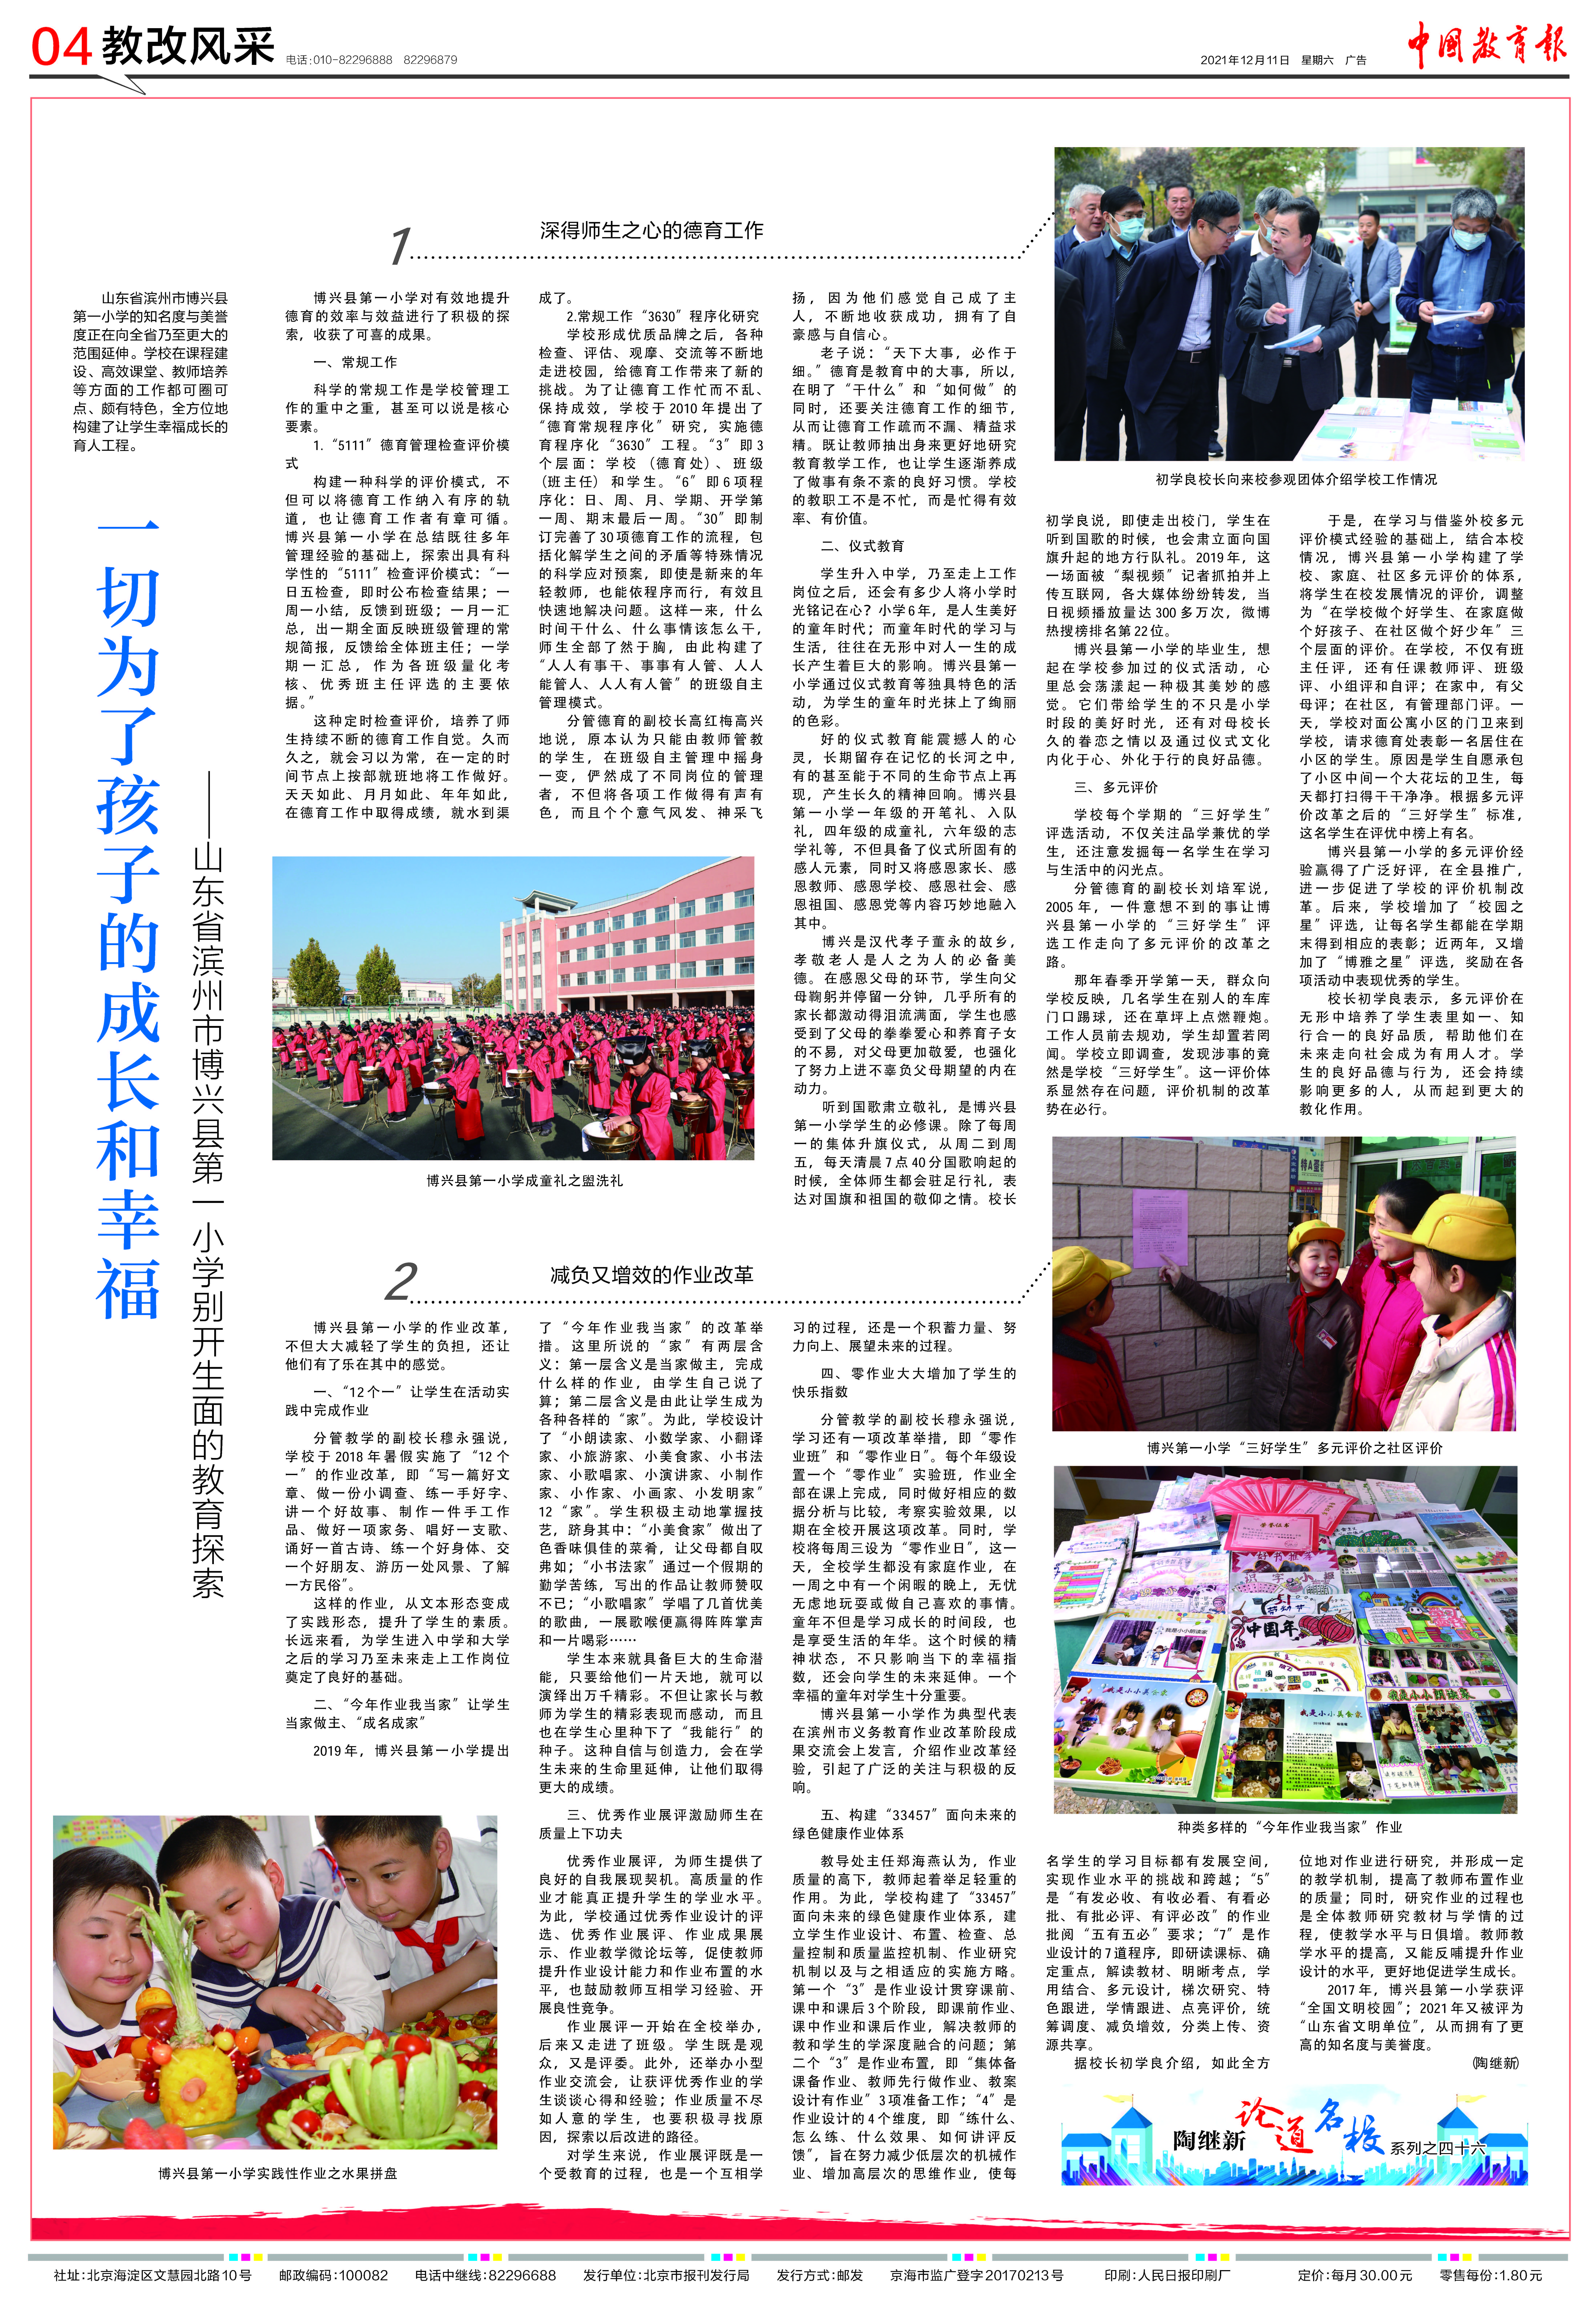 《中国教育报》点赞博兴县第一小学办学经验